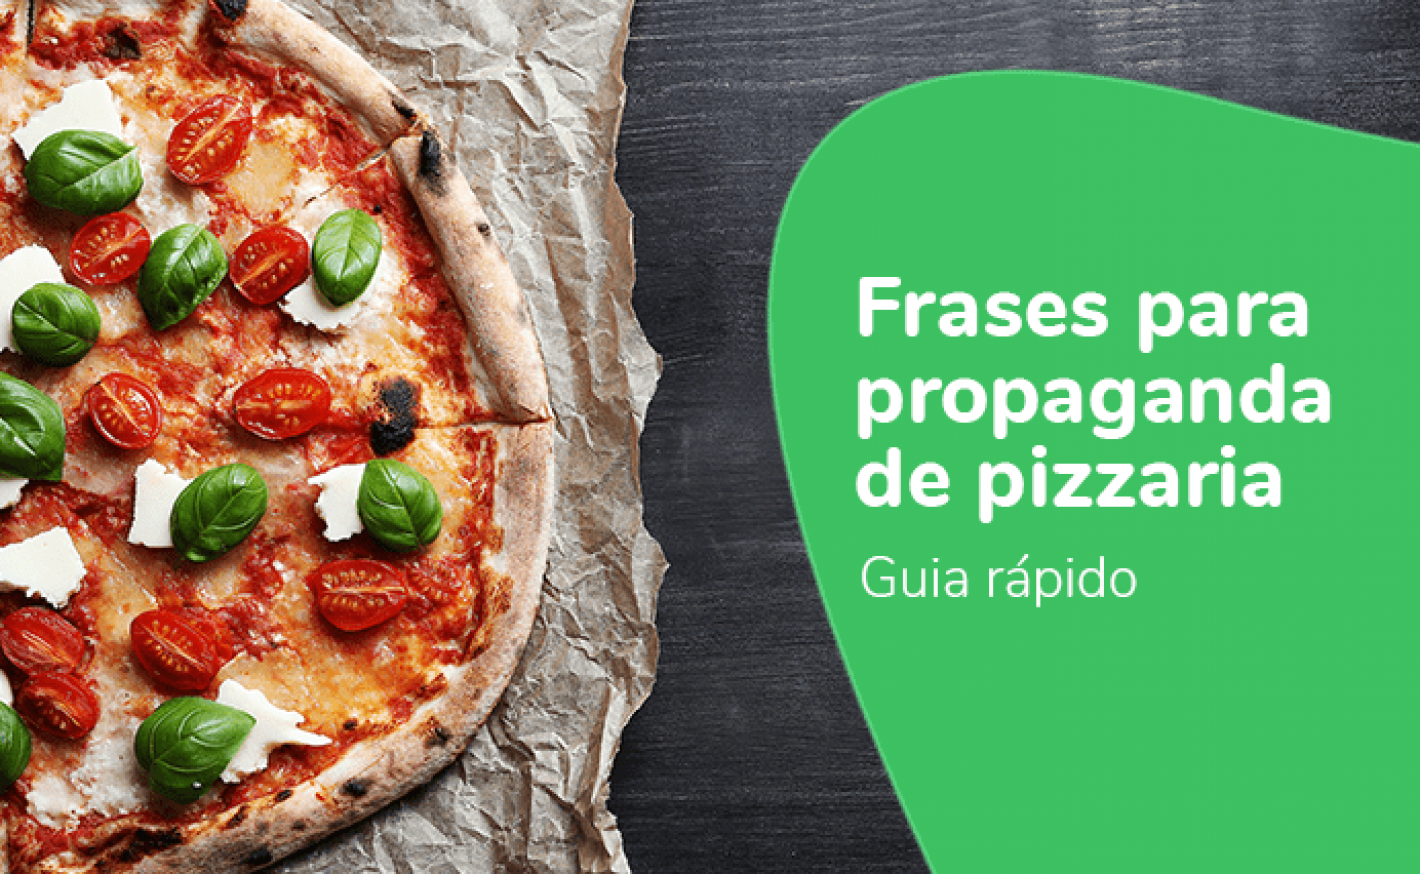 Frases para propaganda de Pizzaria: Guia rápido